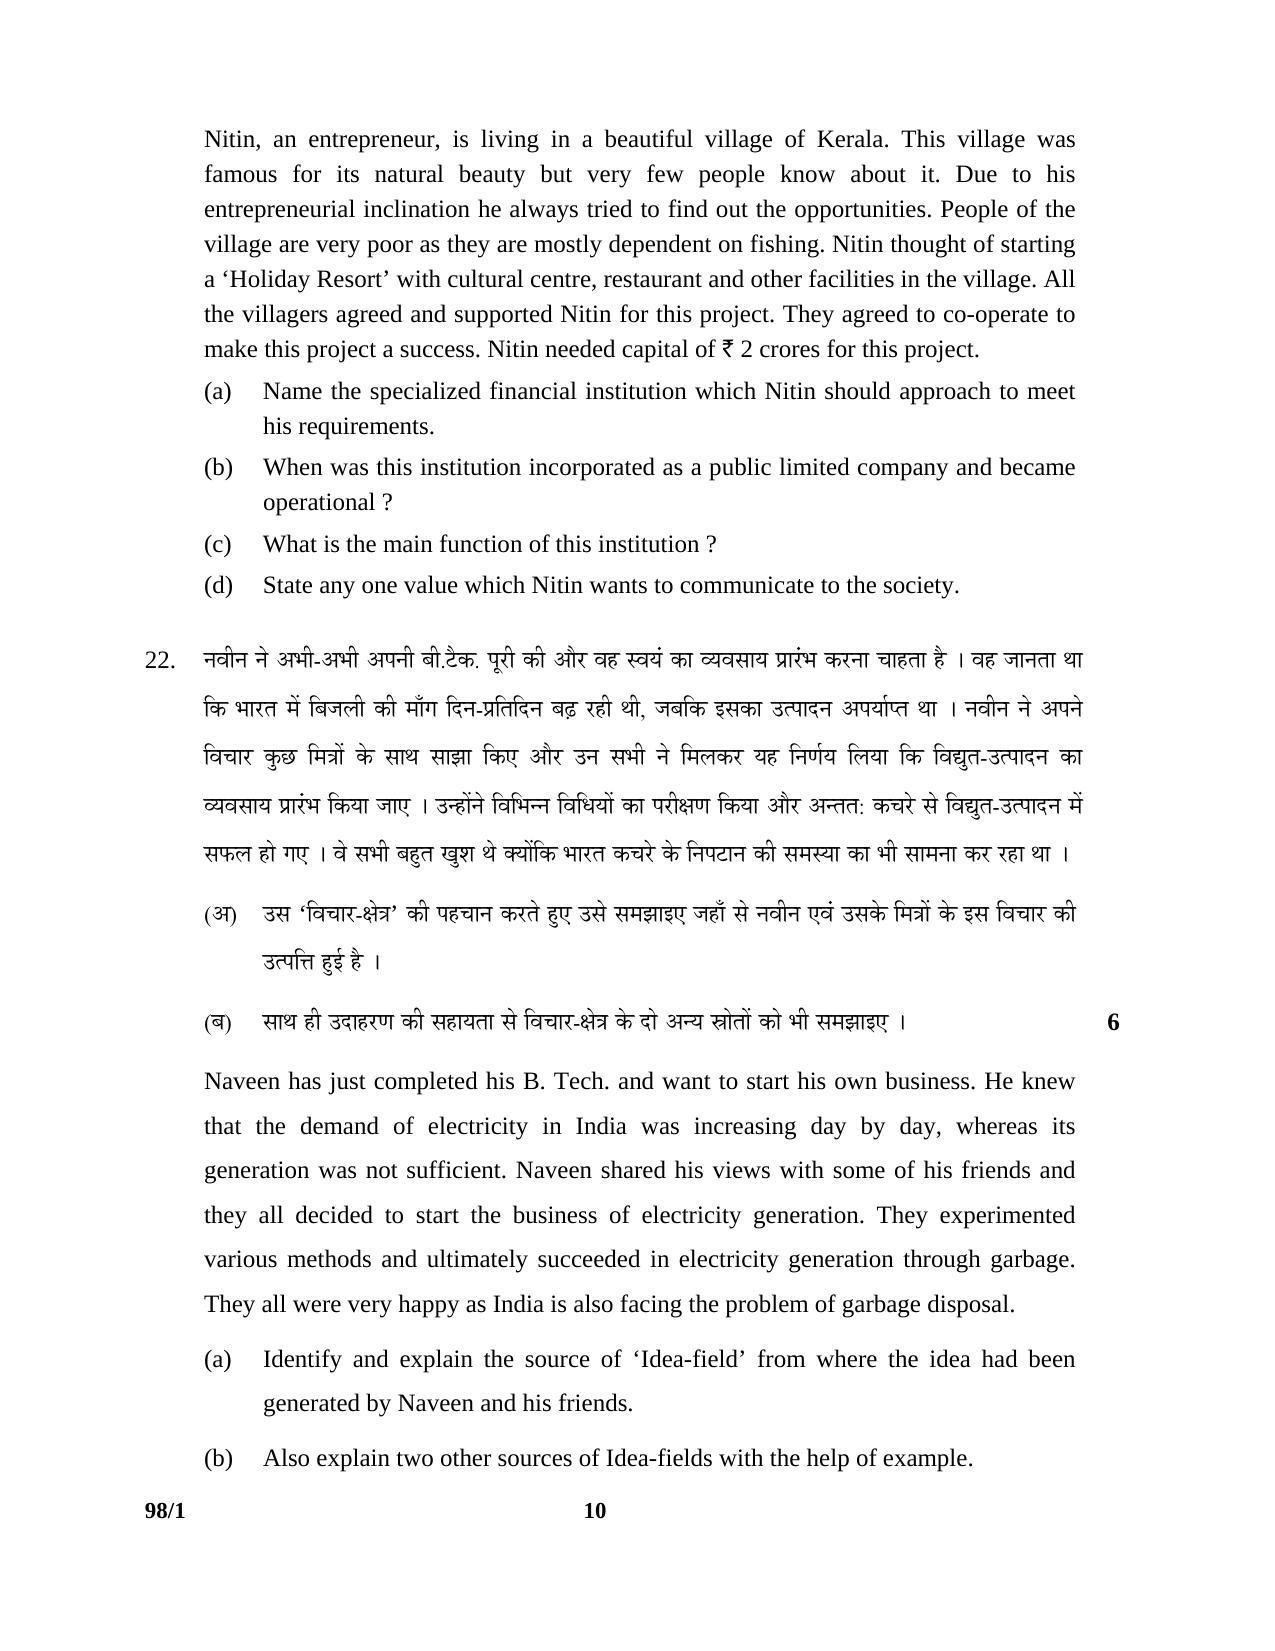 CBSE Class 12 98-1 ENTREPRENEURSHIP 2016 Question Paper - Page 10